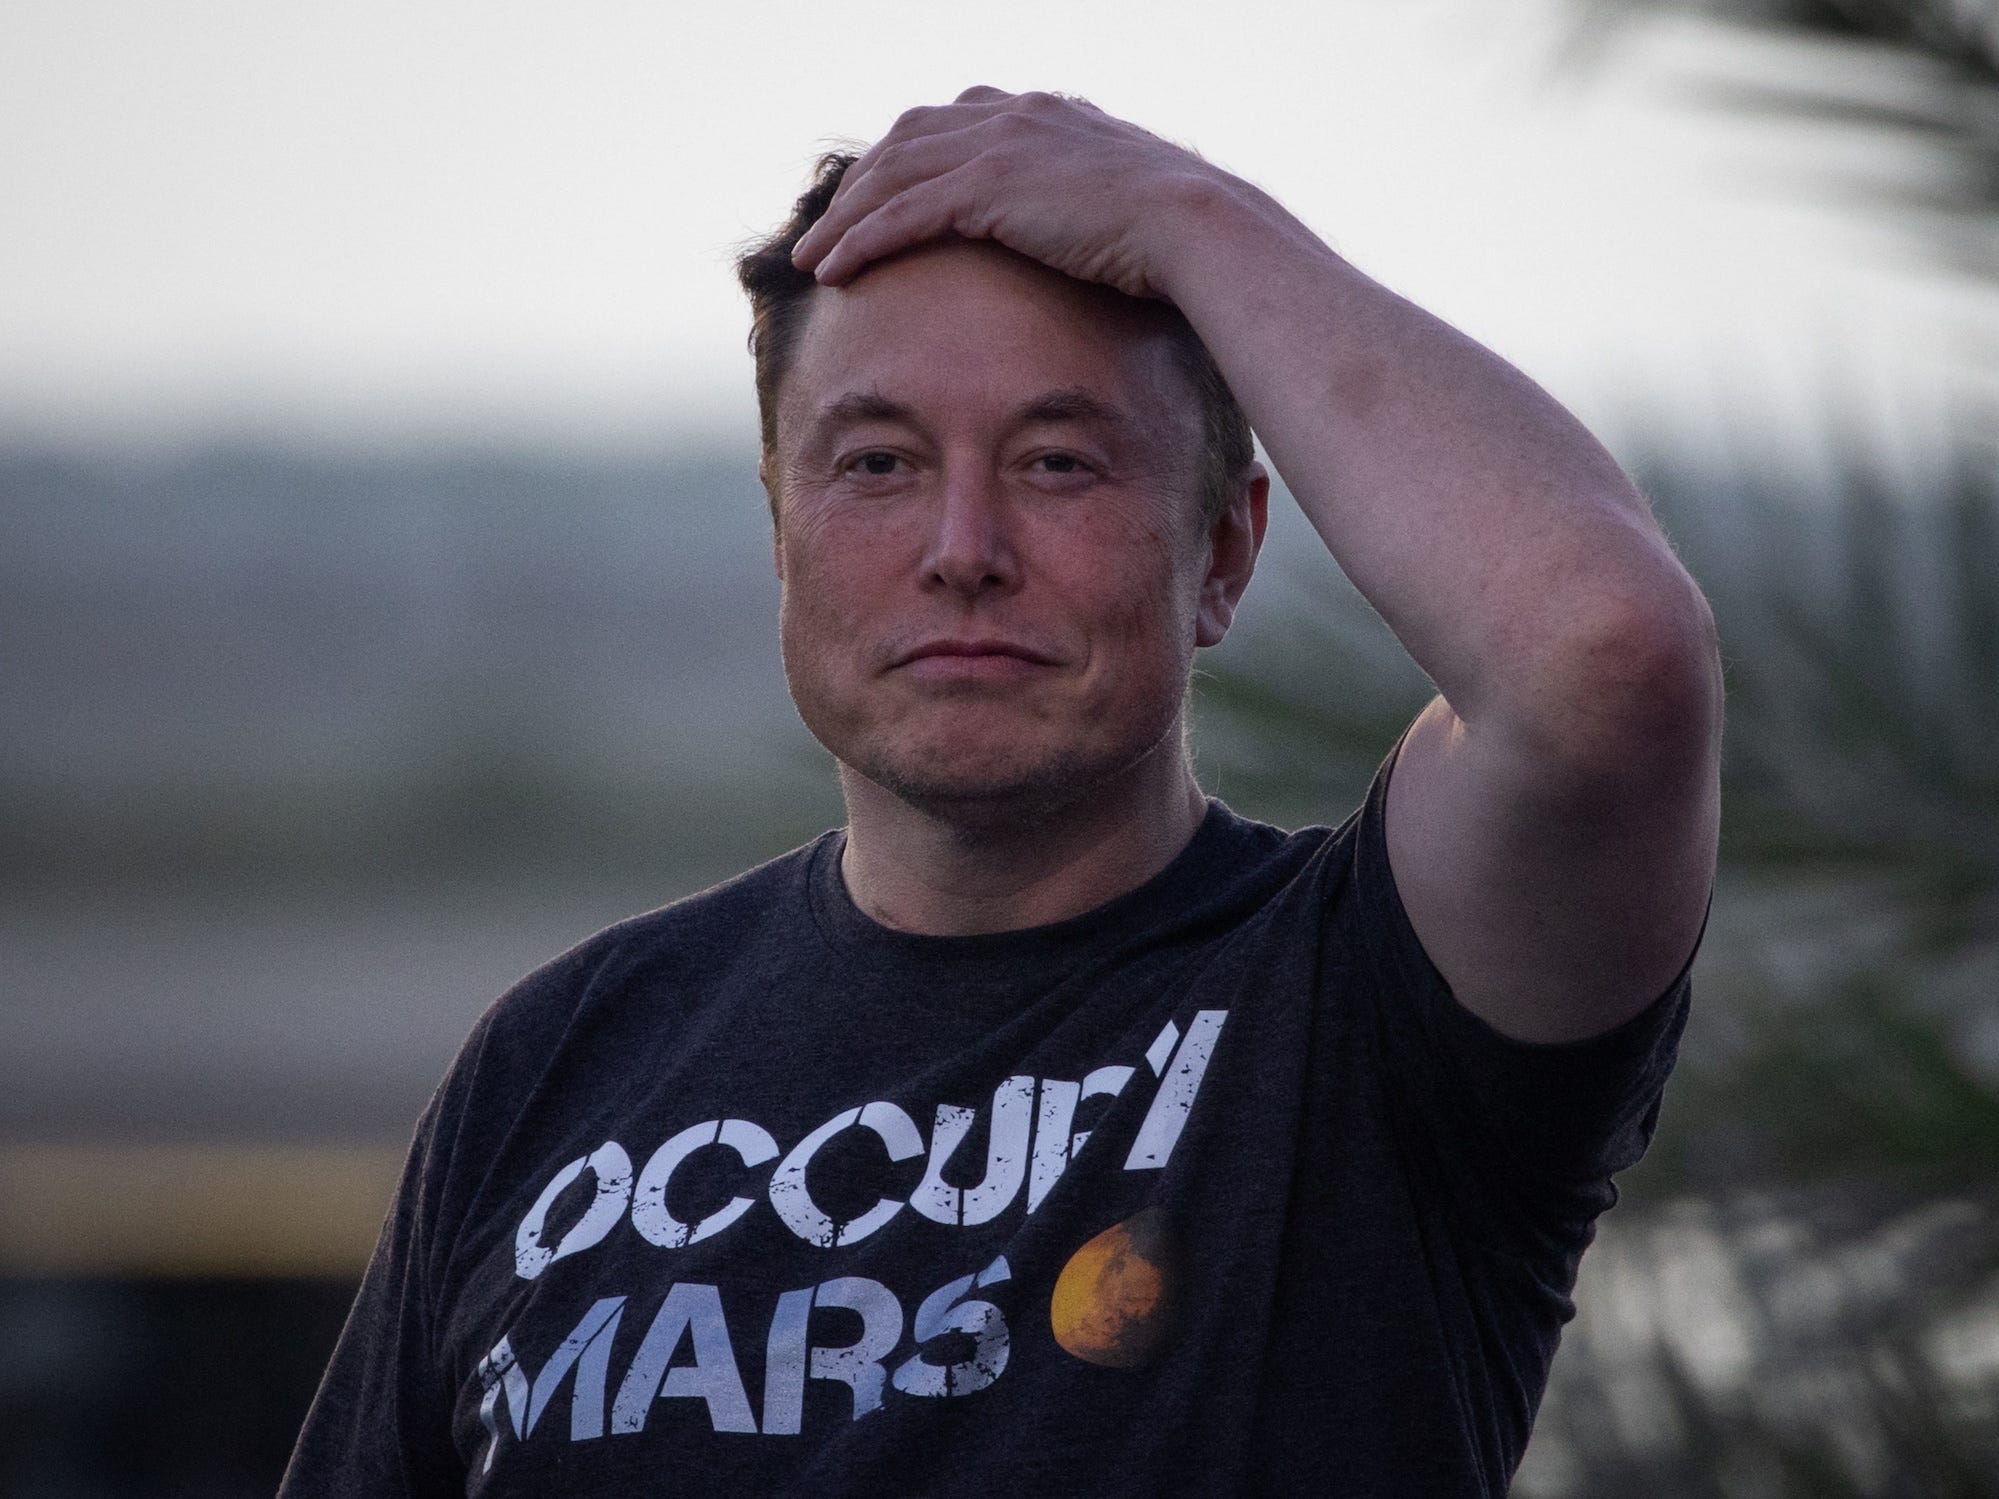 Elon Musk runzelt die Stirn, grinst mit der Hand auf dem Kopf und trägt ein schwarzes Occupy-Mars-Shirt